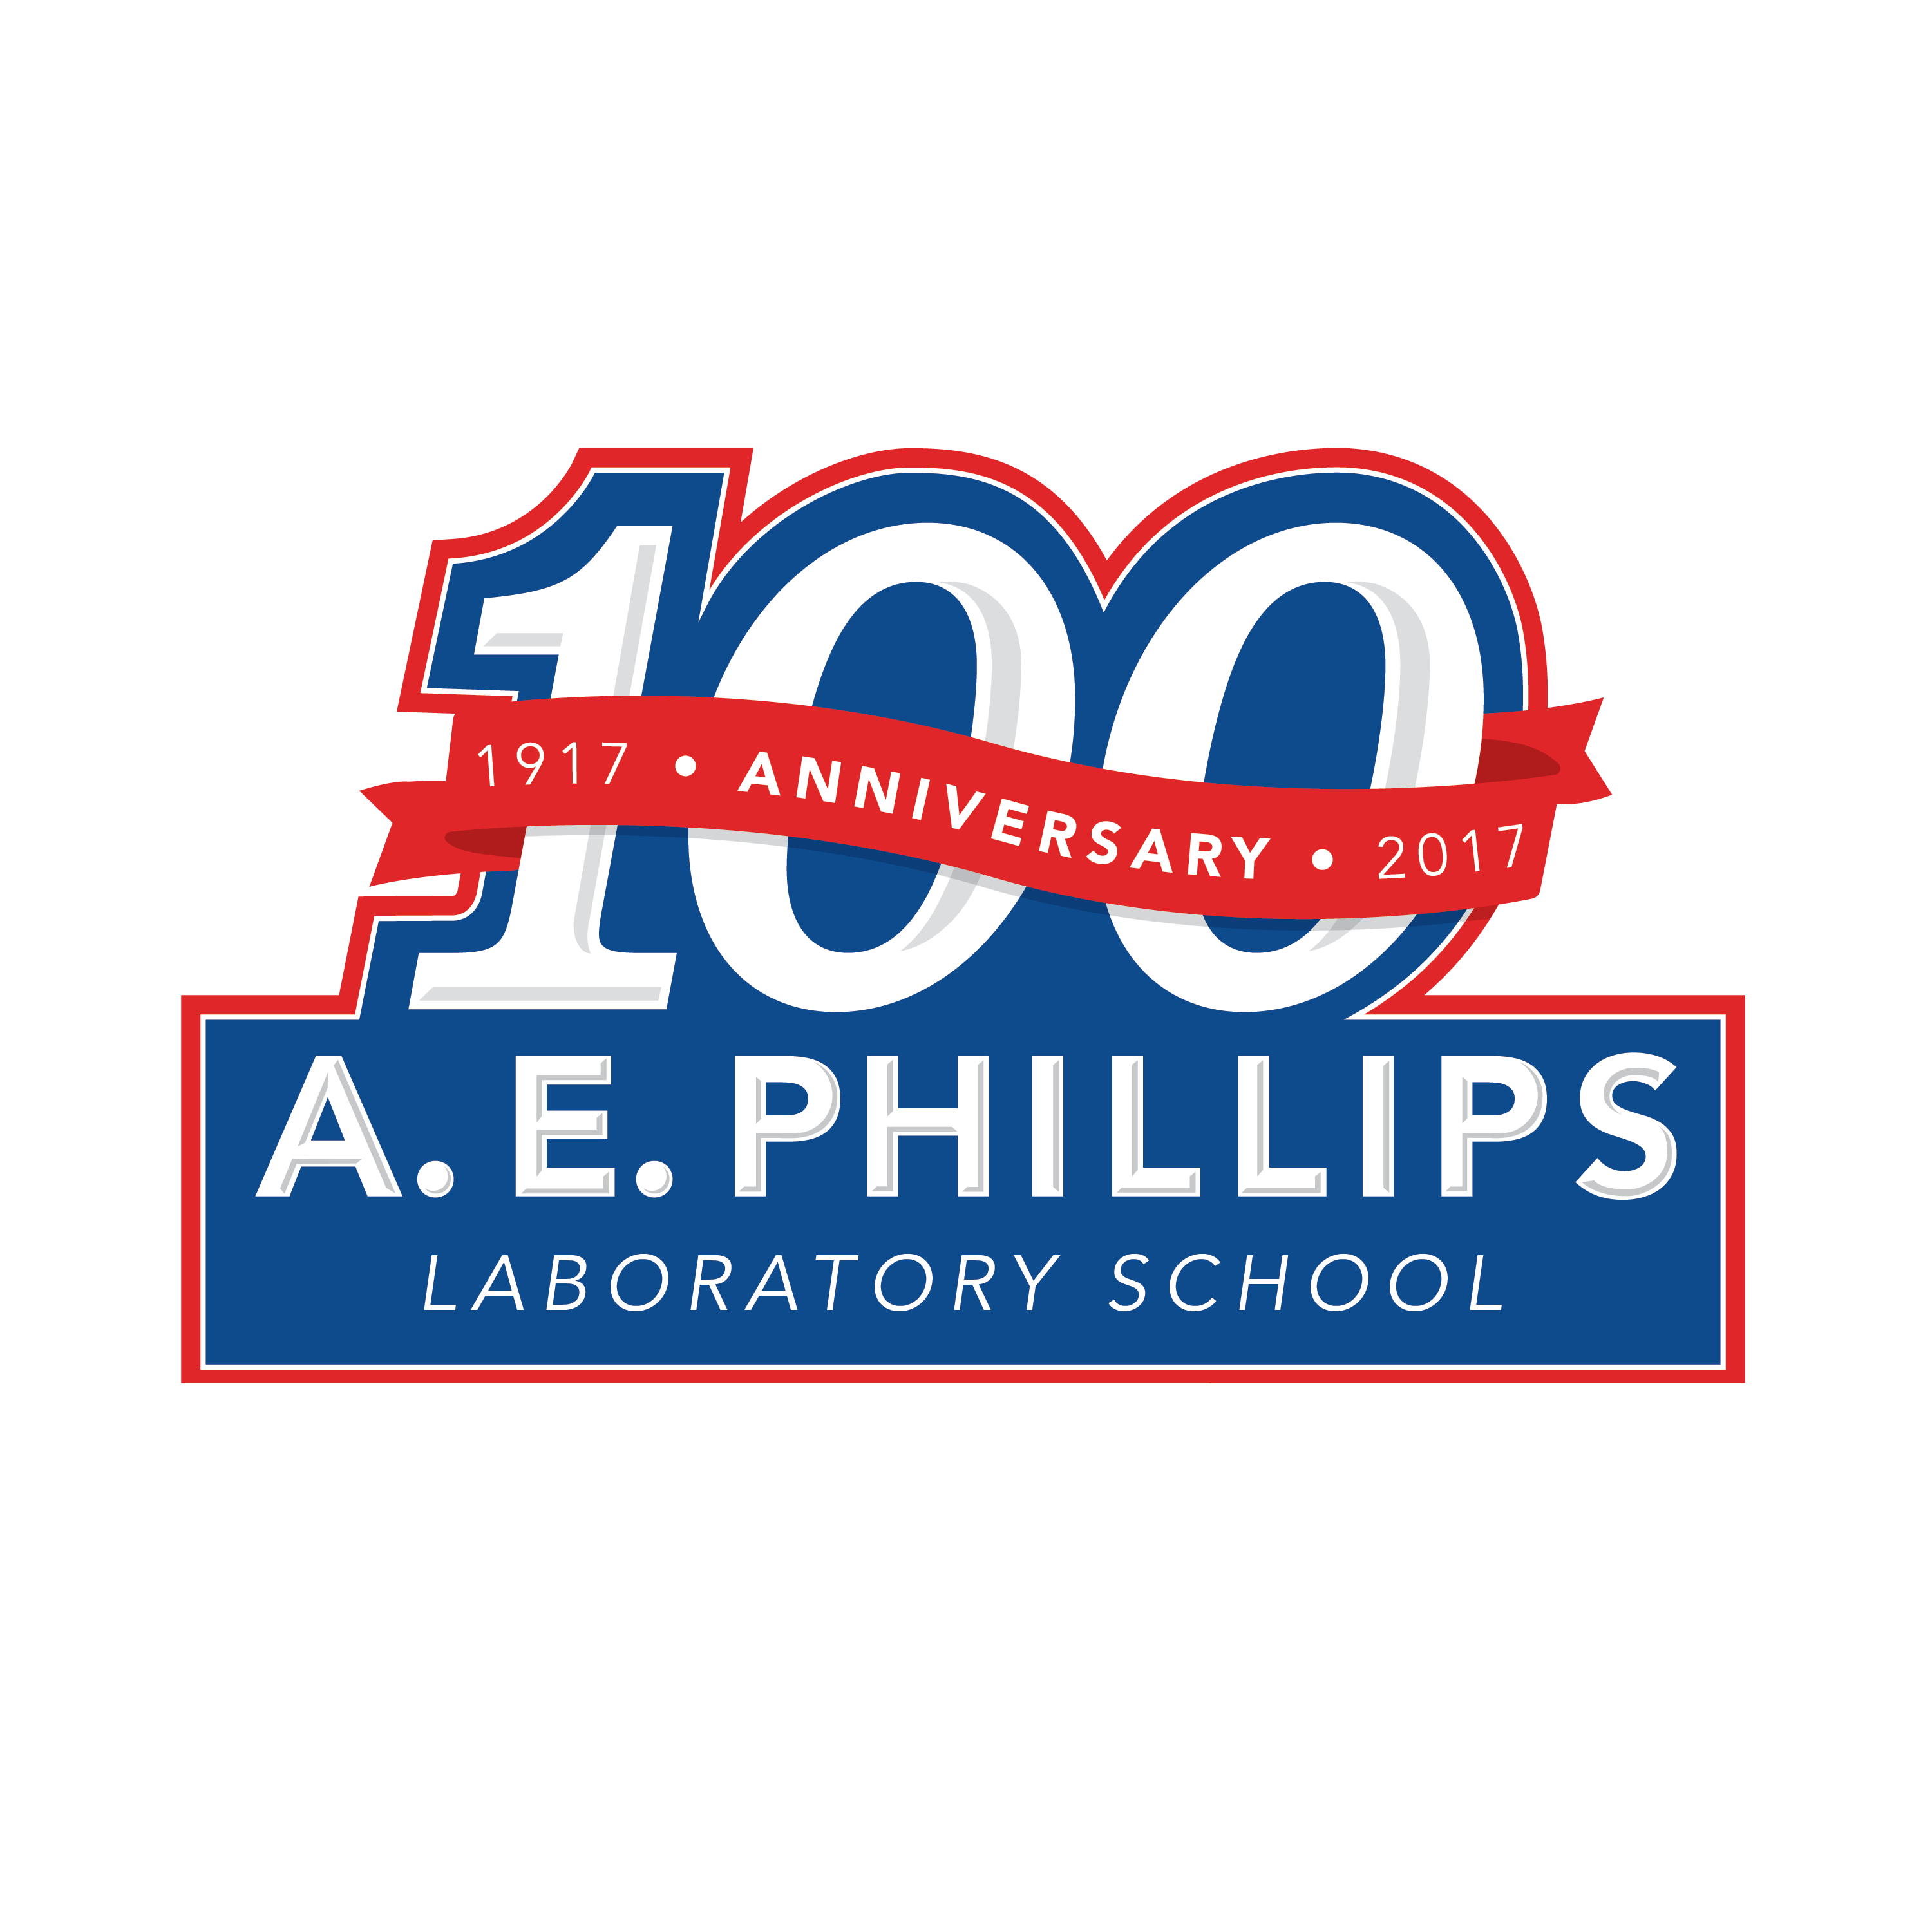 A. E. Phillips Centennial logo